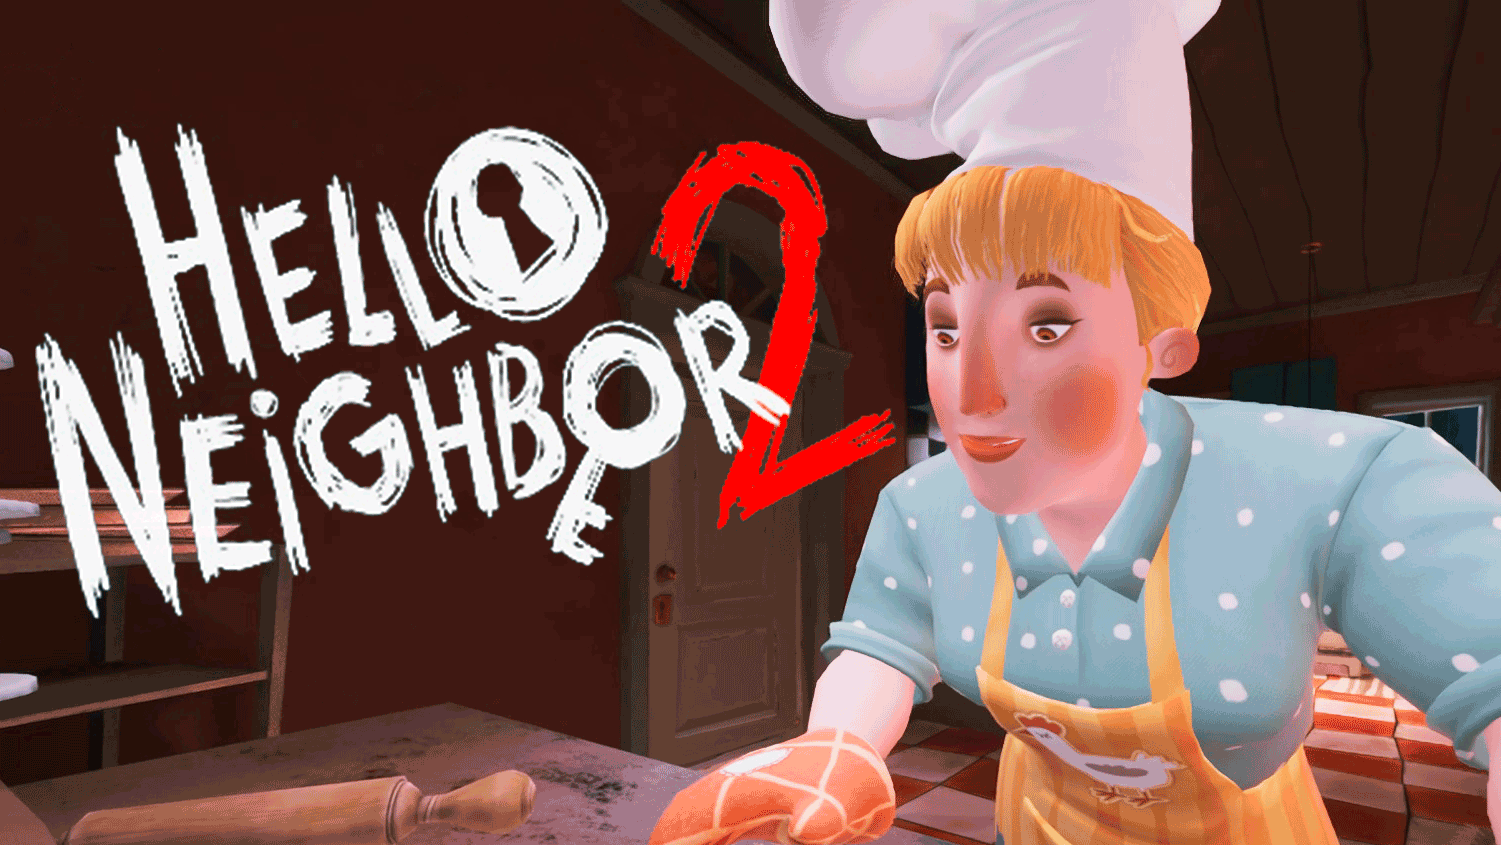 ОТКРЫЛАСЬ ПЕКАРНЯ _ Hello Neighbor 2 #3